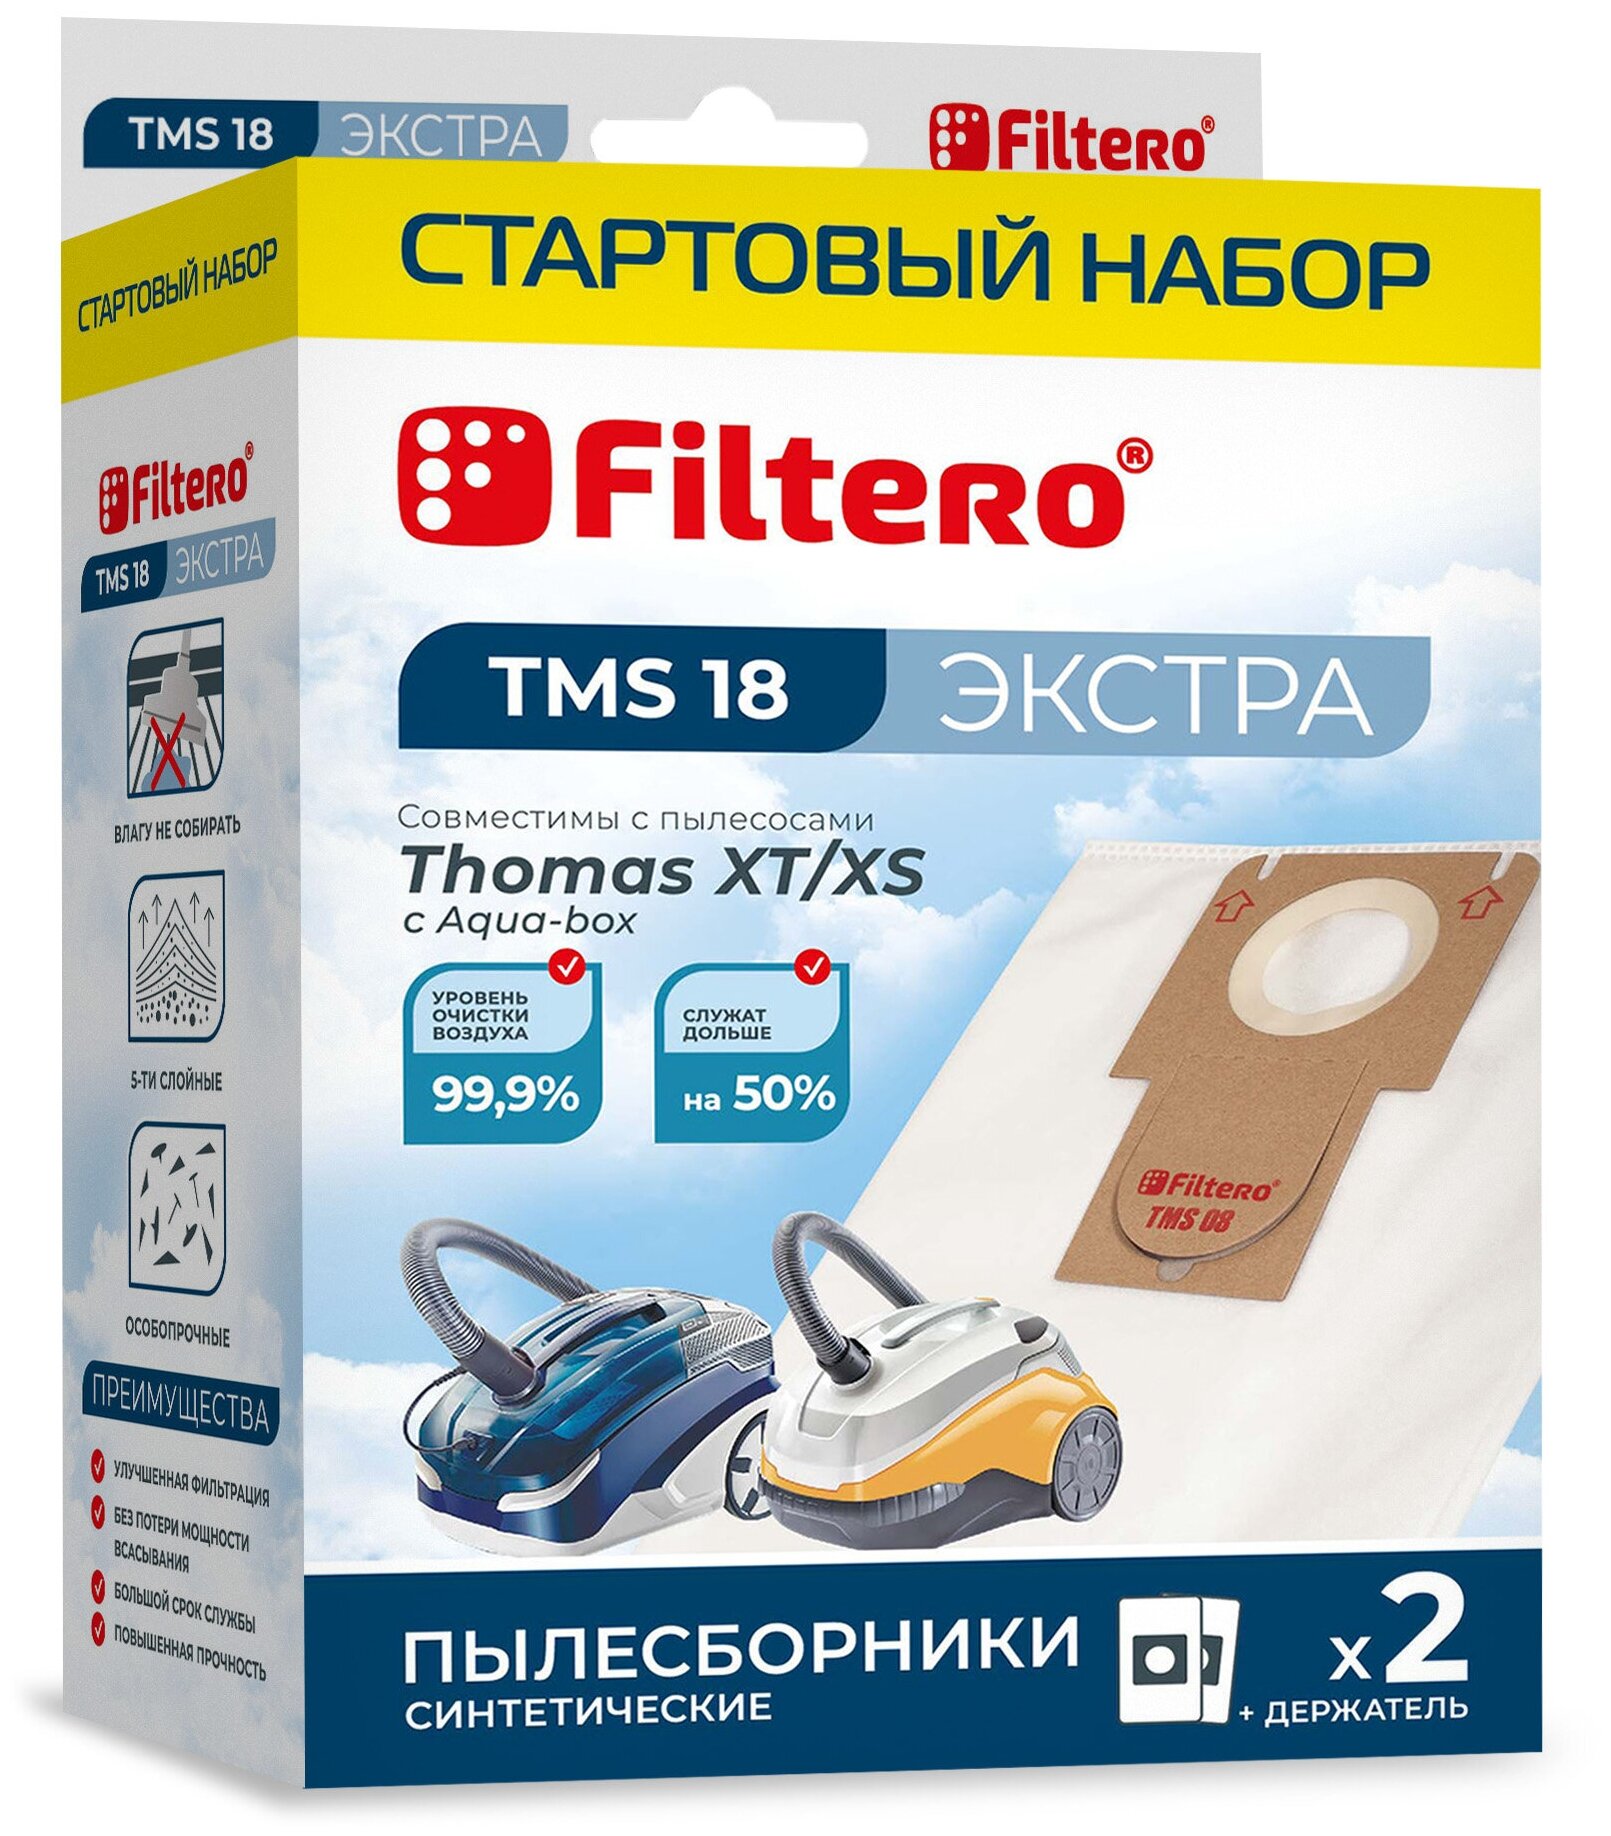 Мешки-пылесборники Filtero TMS 18 Экстра для пылесосов THOMAS XT/XS, стартовый набор мешки-пылесборники, синтетические 2 штуки + держатель